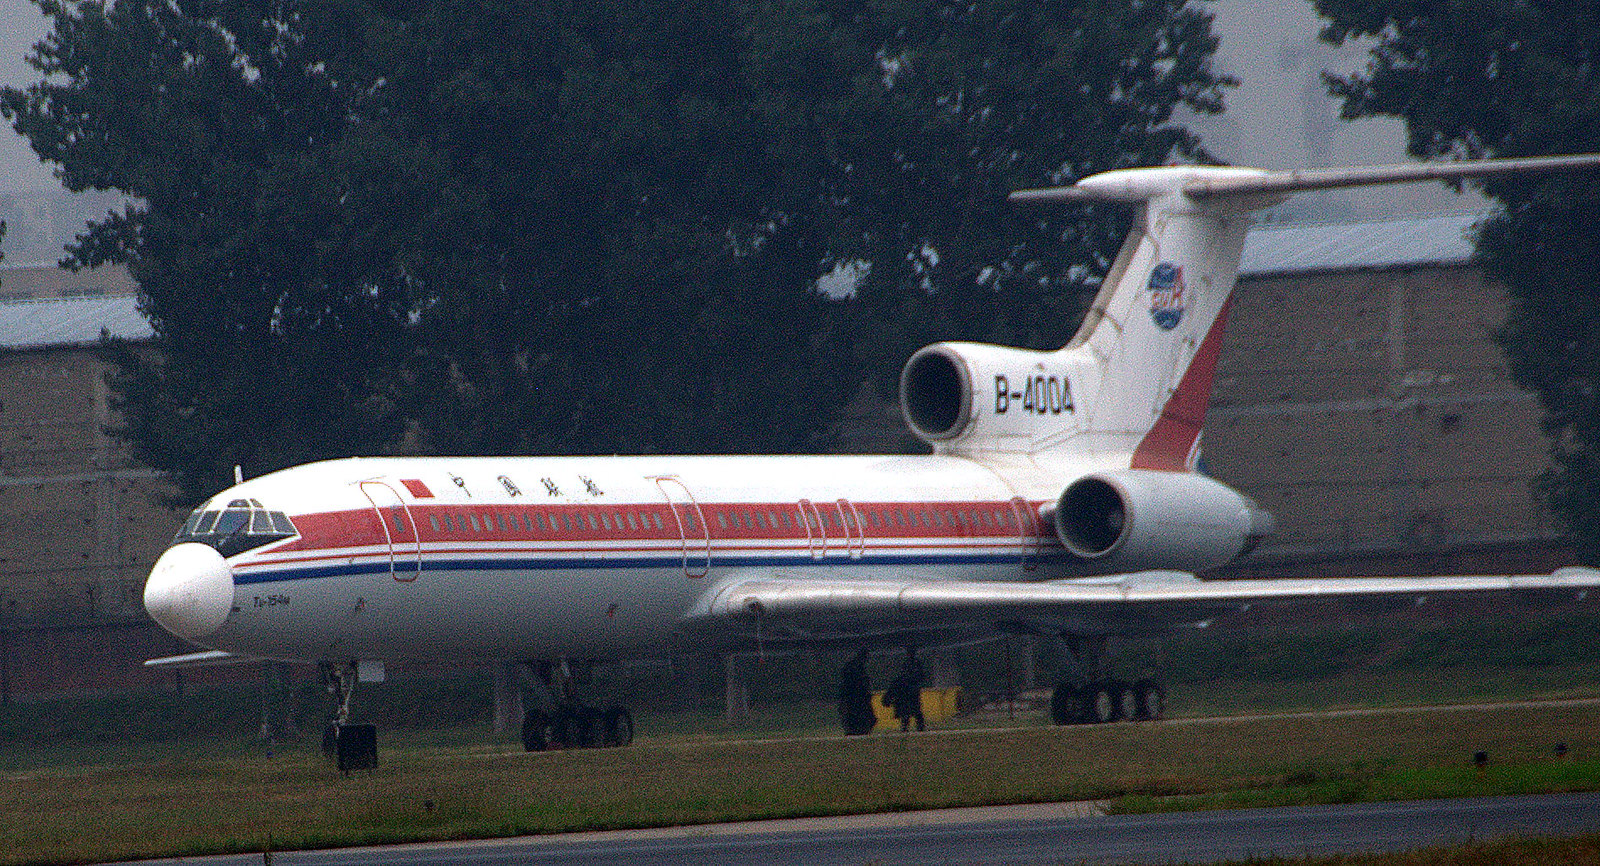 TU-154M B-4004